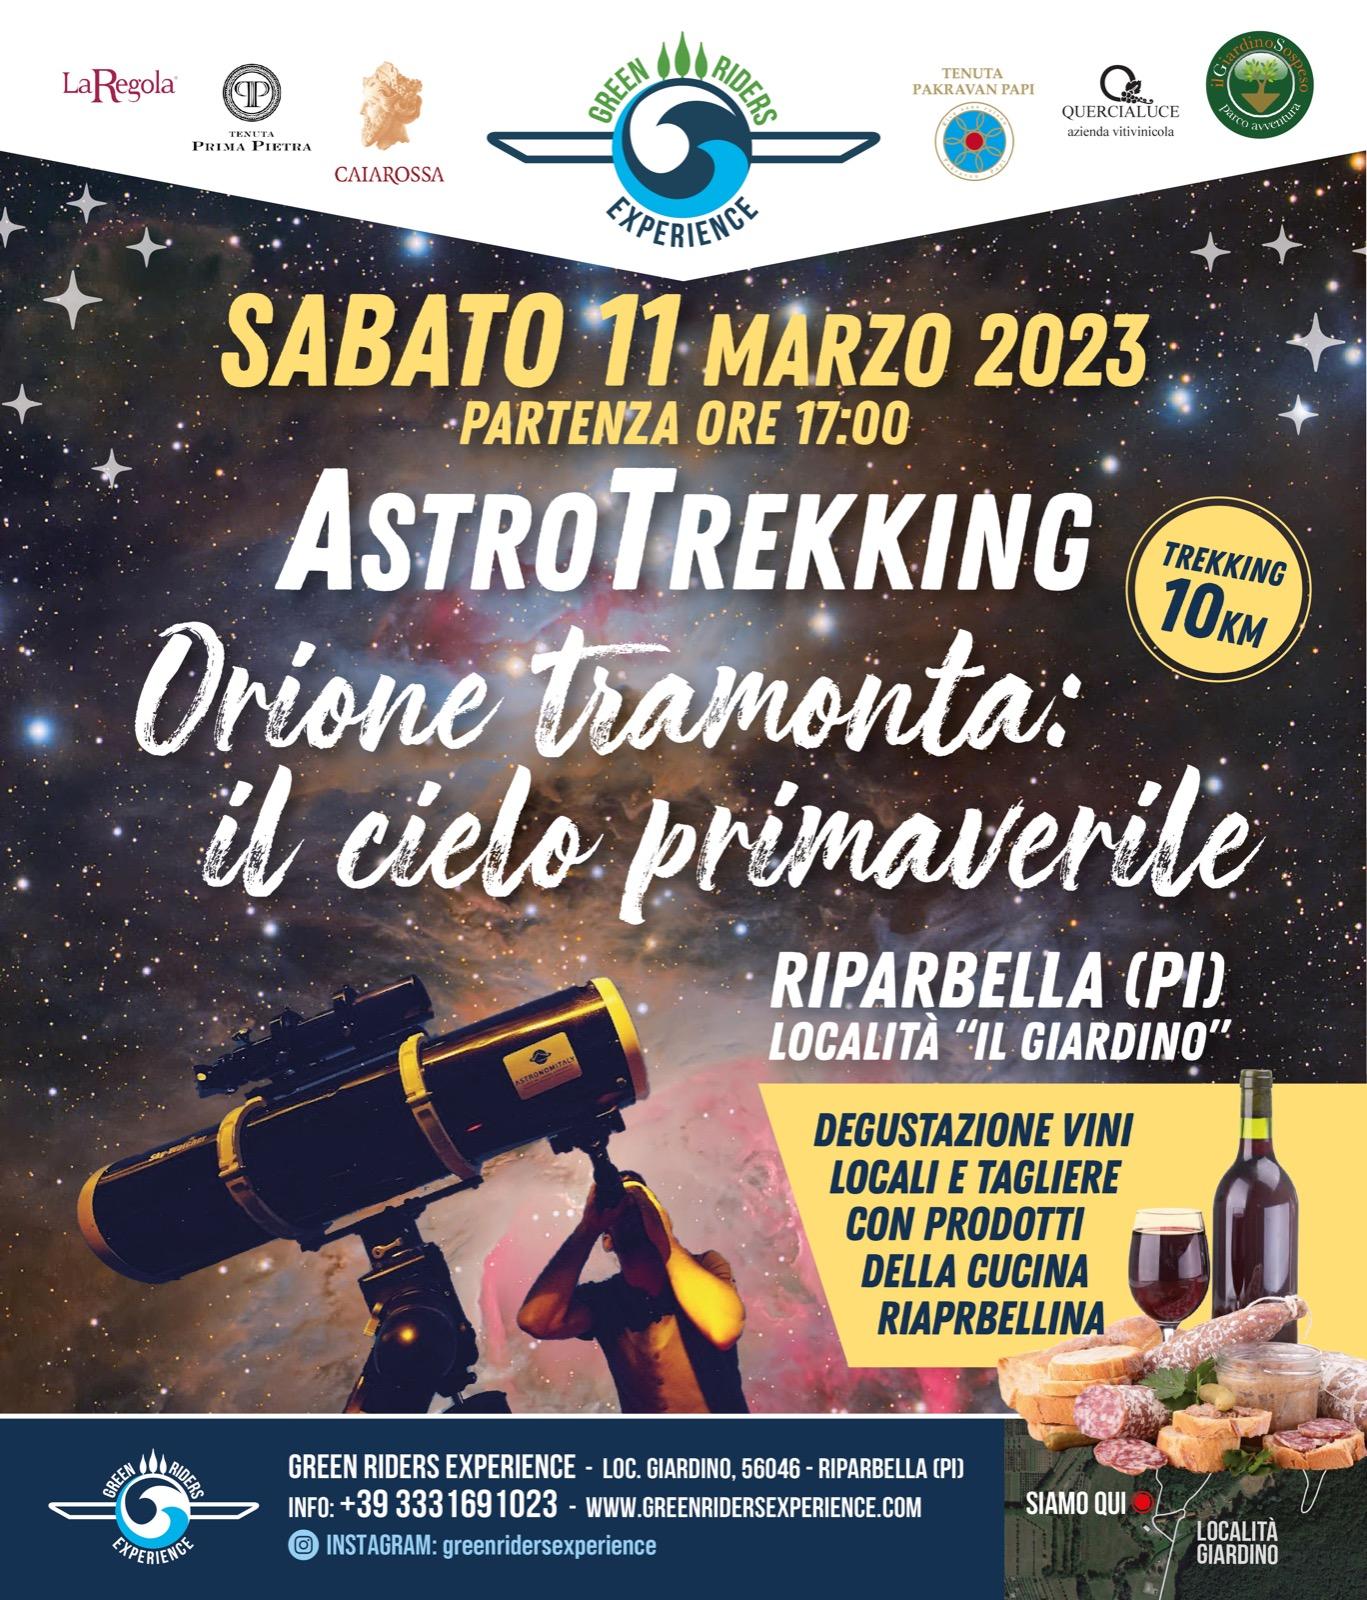 ASTROTREKKING " ORIONE TRAMONTA: IL CIELO PRIMAVERILE" SABATO 11 MARZO 2023